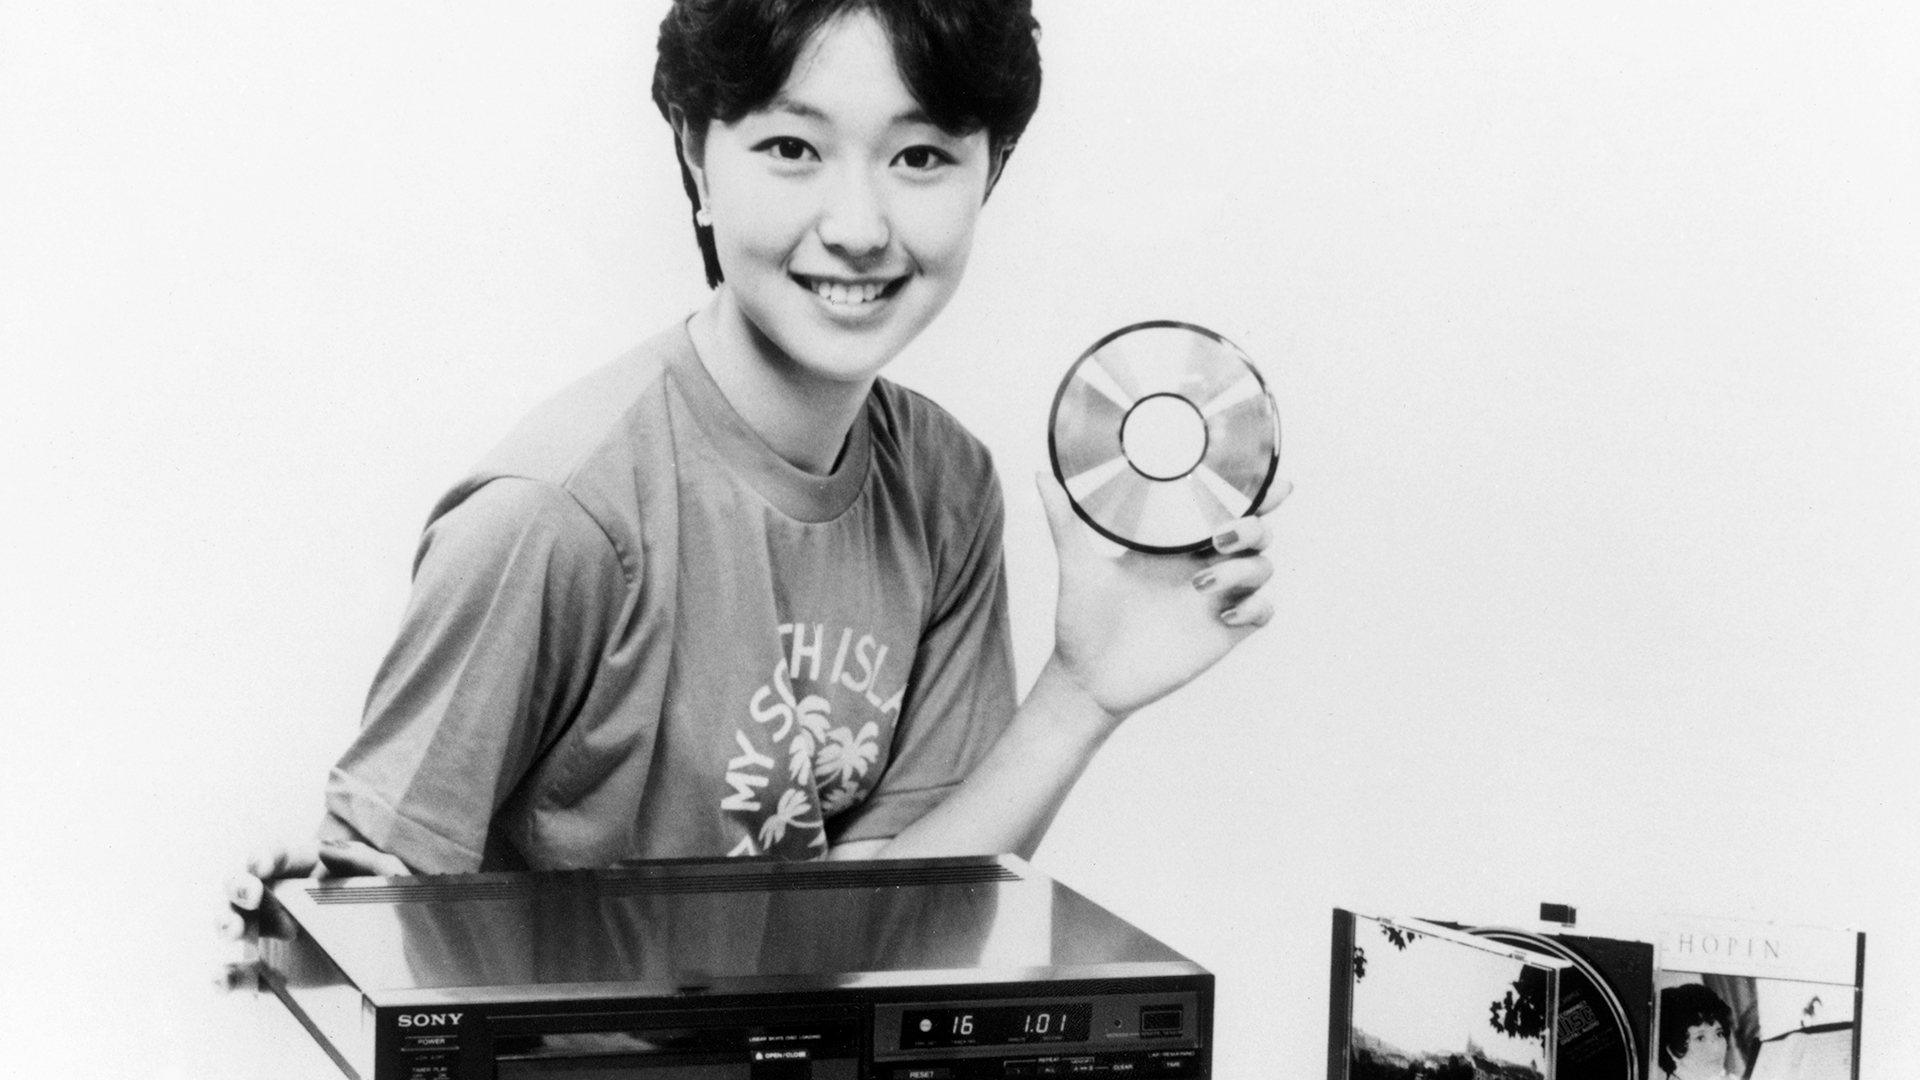 Ein Model präsentiert im September 1982 in Japan die neuesten Produkte der Sony Corporation: den CD-Player CDP-101 und Compact Disc's mit einem Durchmesser von 12 Zentimetern.